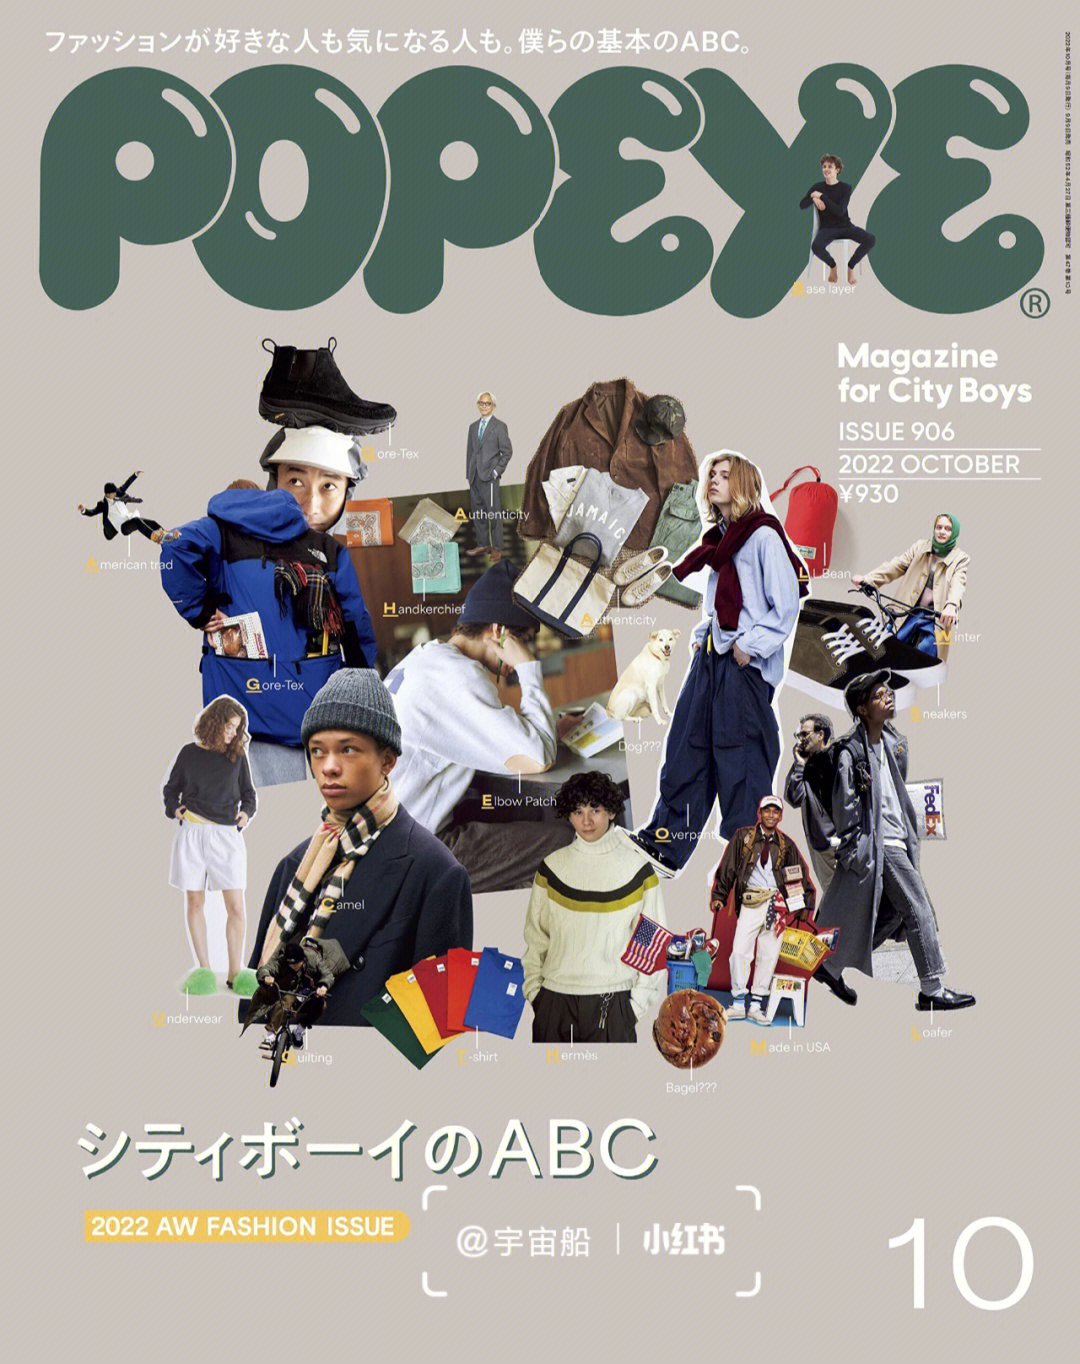 日本畅销男性潮流杂志popeye 2022年10月号城市男孩的2022年秋冬时尚